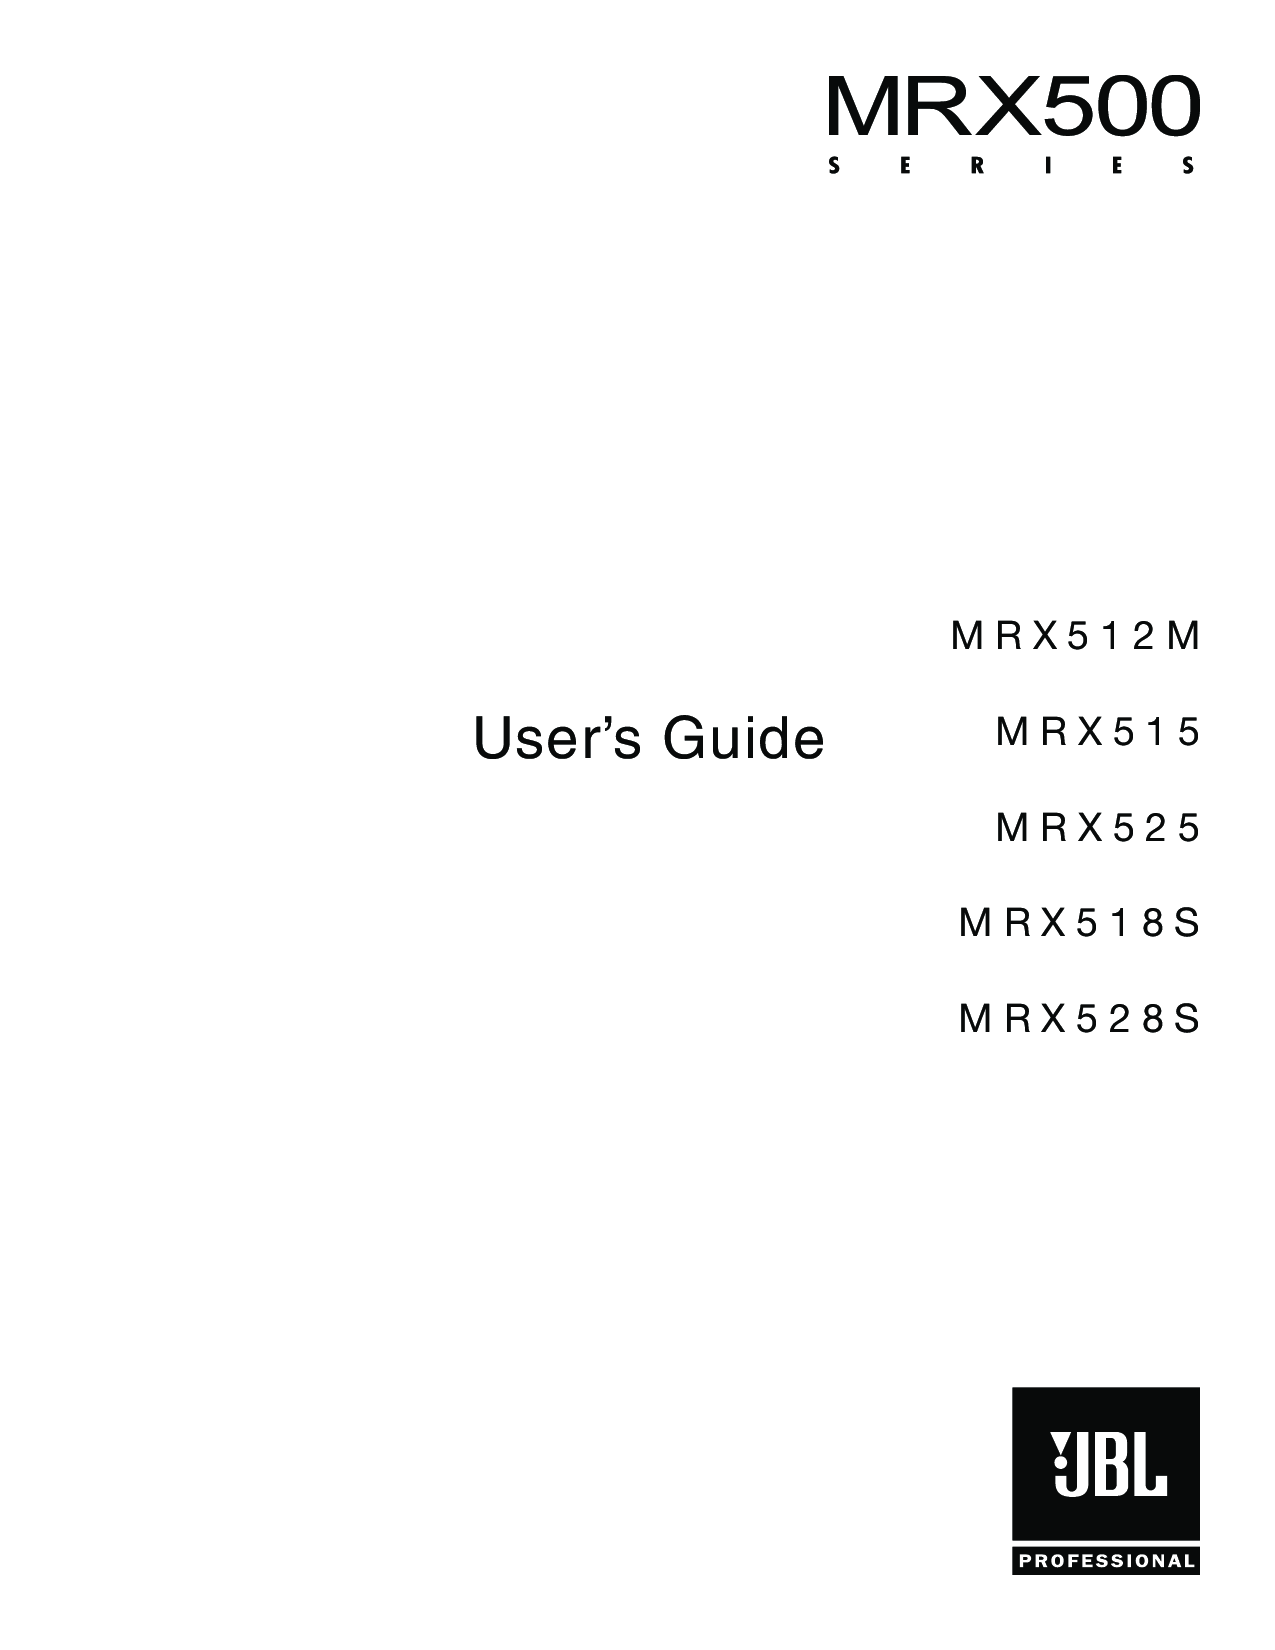 JBL MRX 512M, MRX 515, MRX 525, MRX 500, MRX 518S User Manual